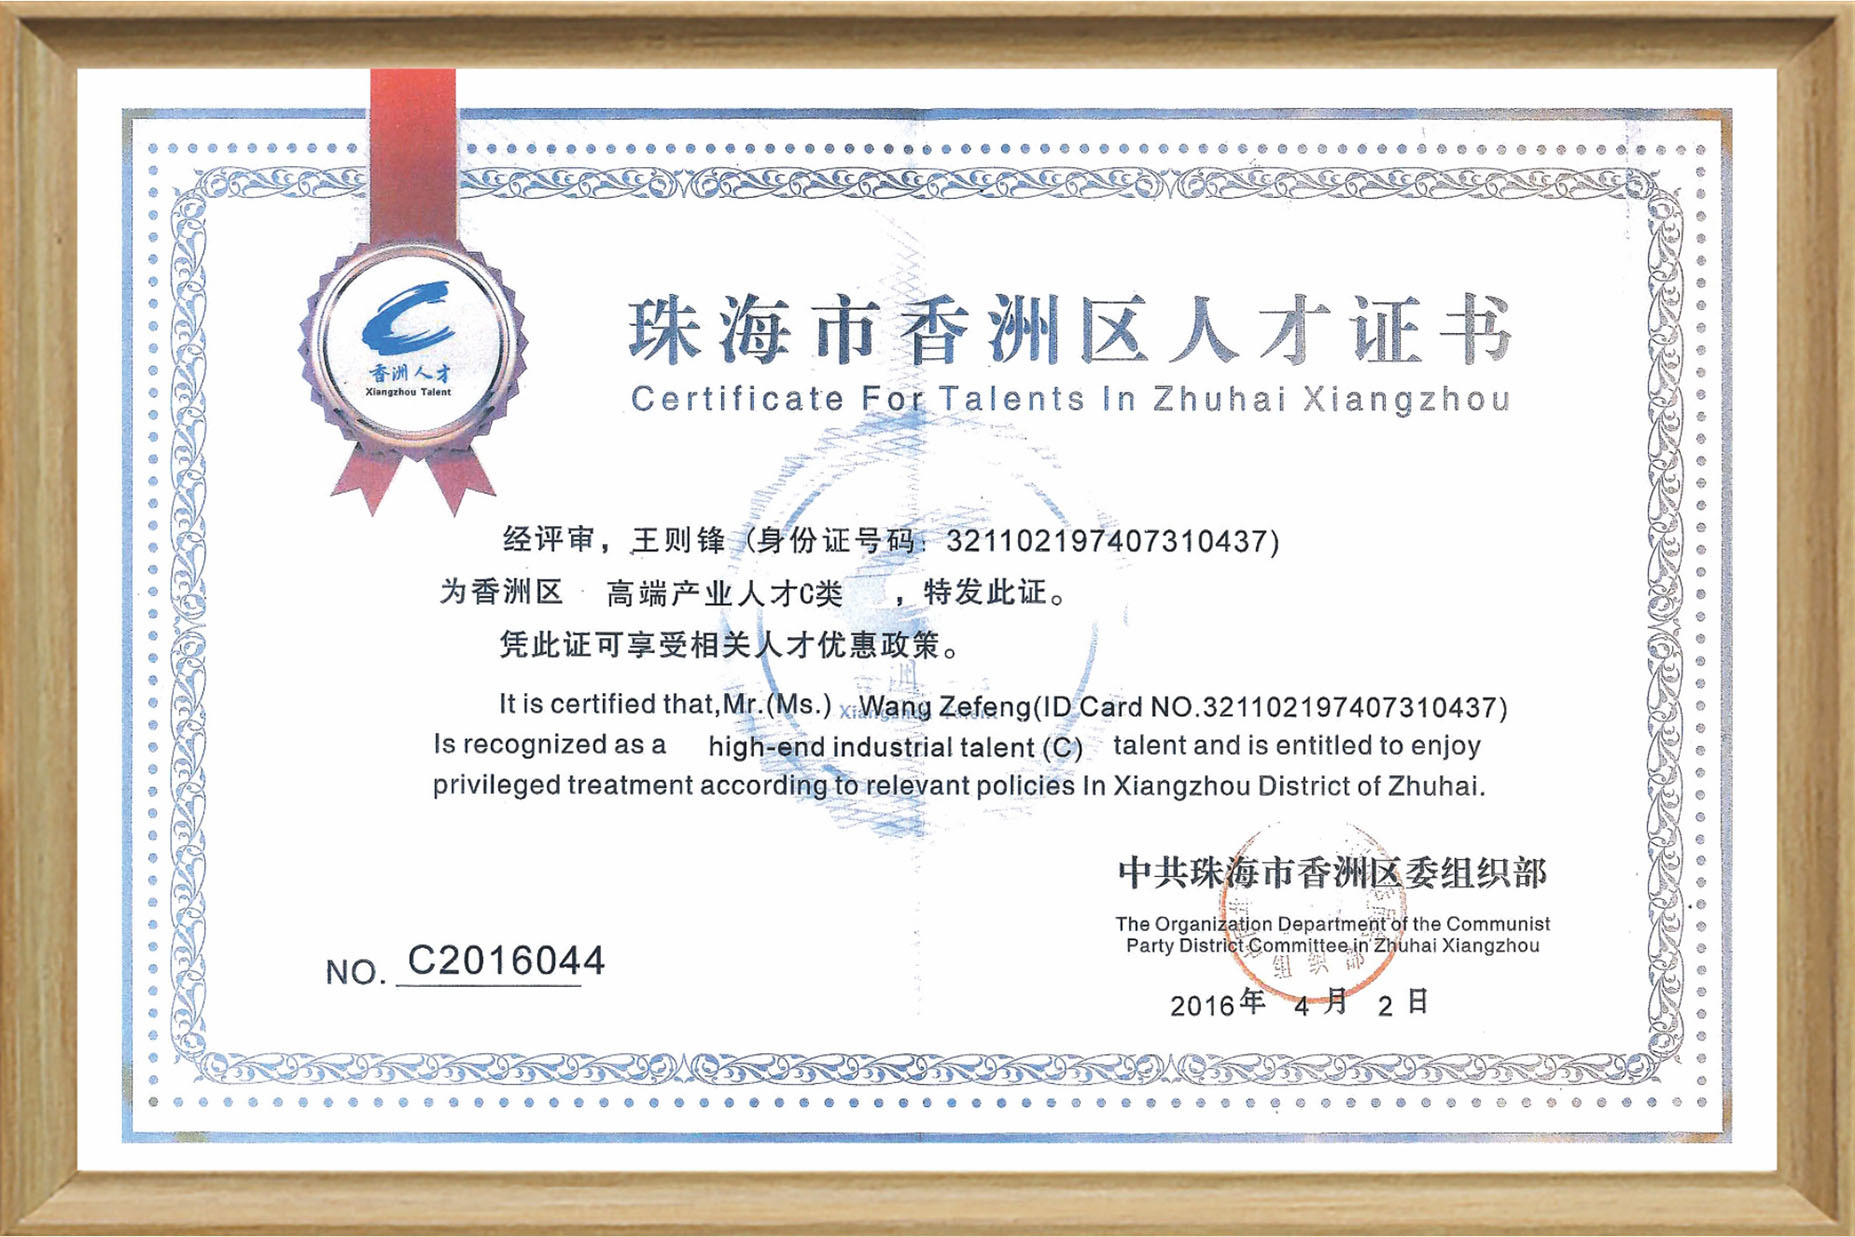 Talent Certificate of Xiangzhou District - Wang Zefeng